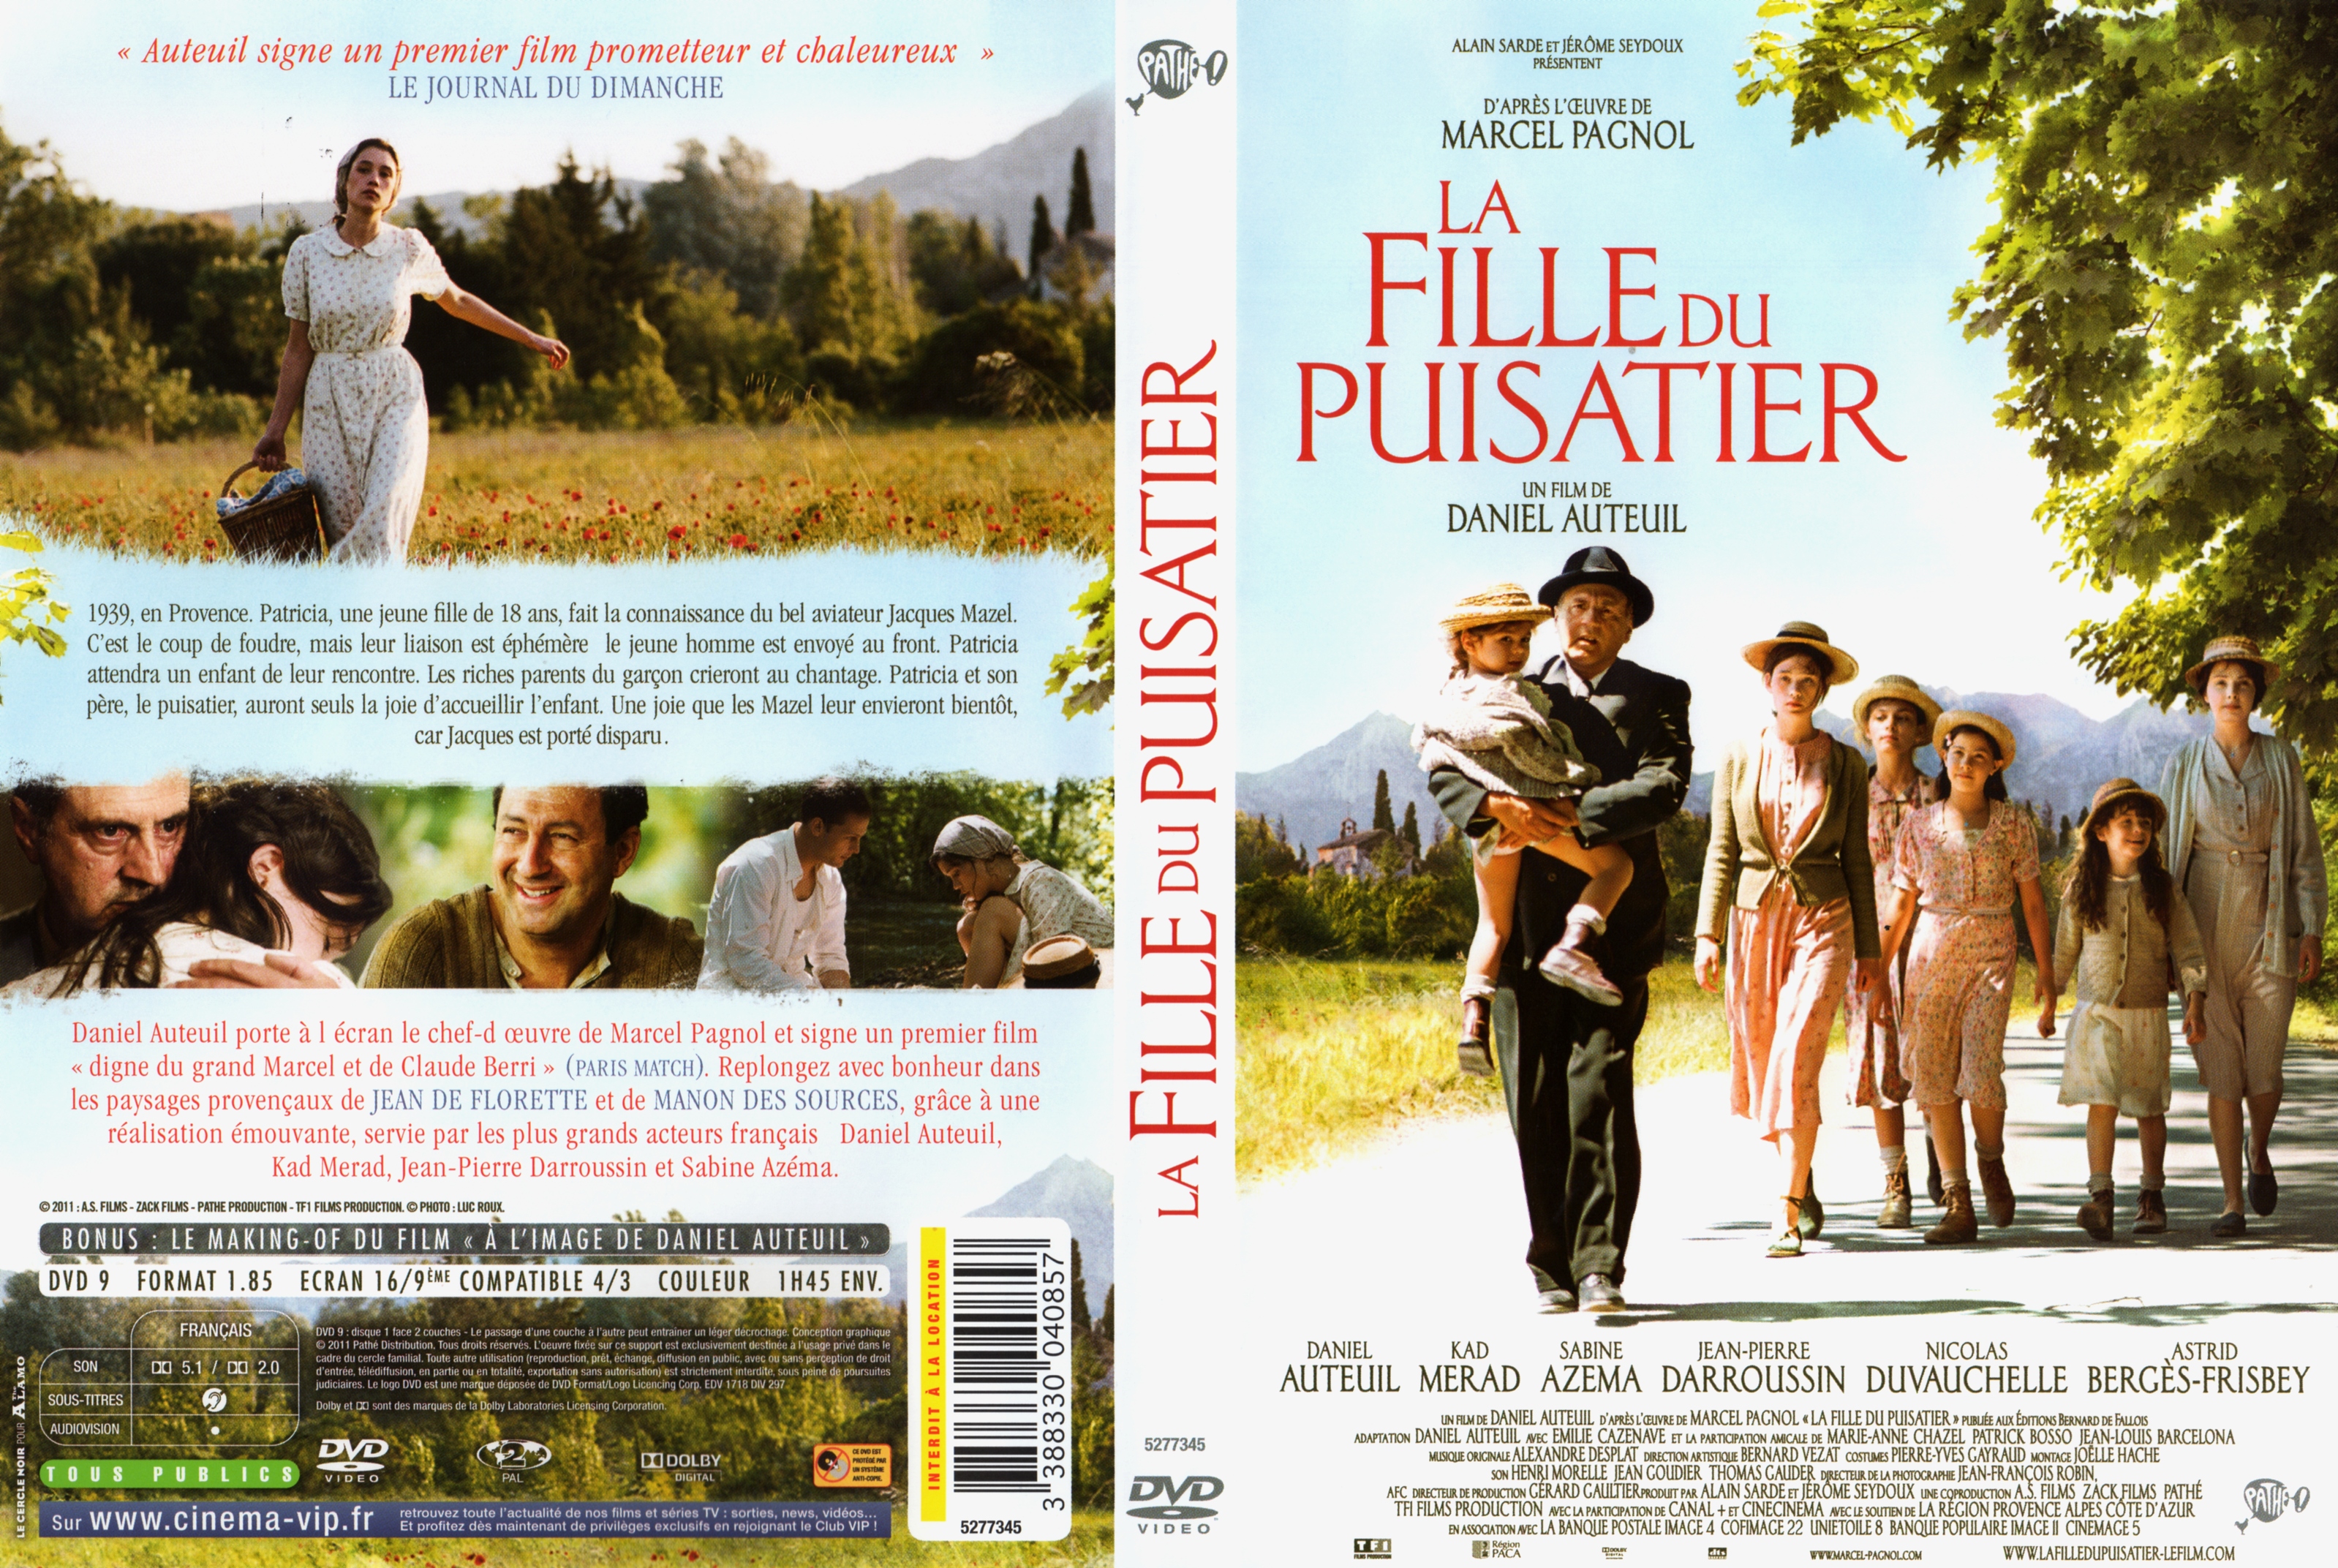 Jaquette DVD La fille du puisatier (2011)